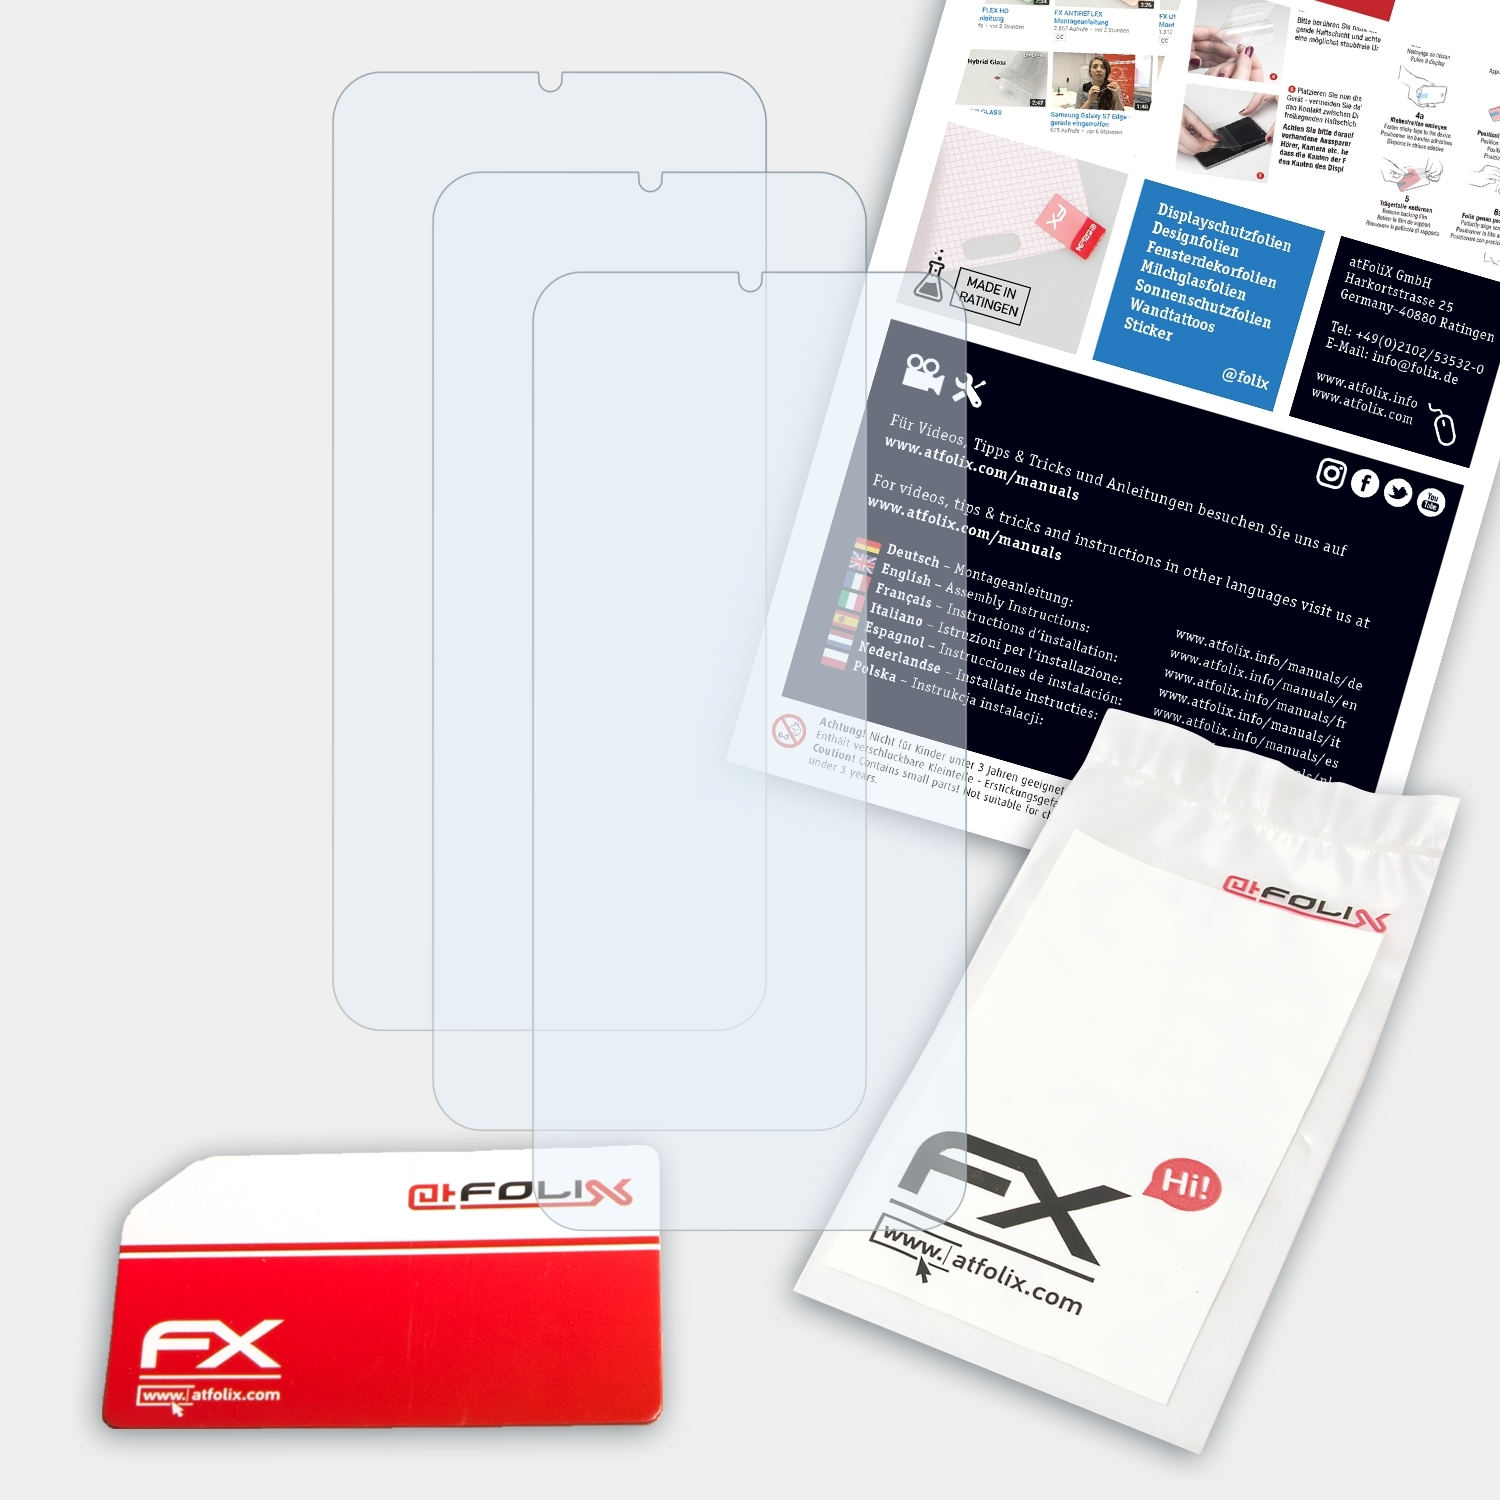 FX-Clear ATFOLIX 3x Vivo V11i) Displayschutz(für